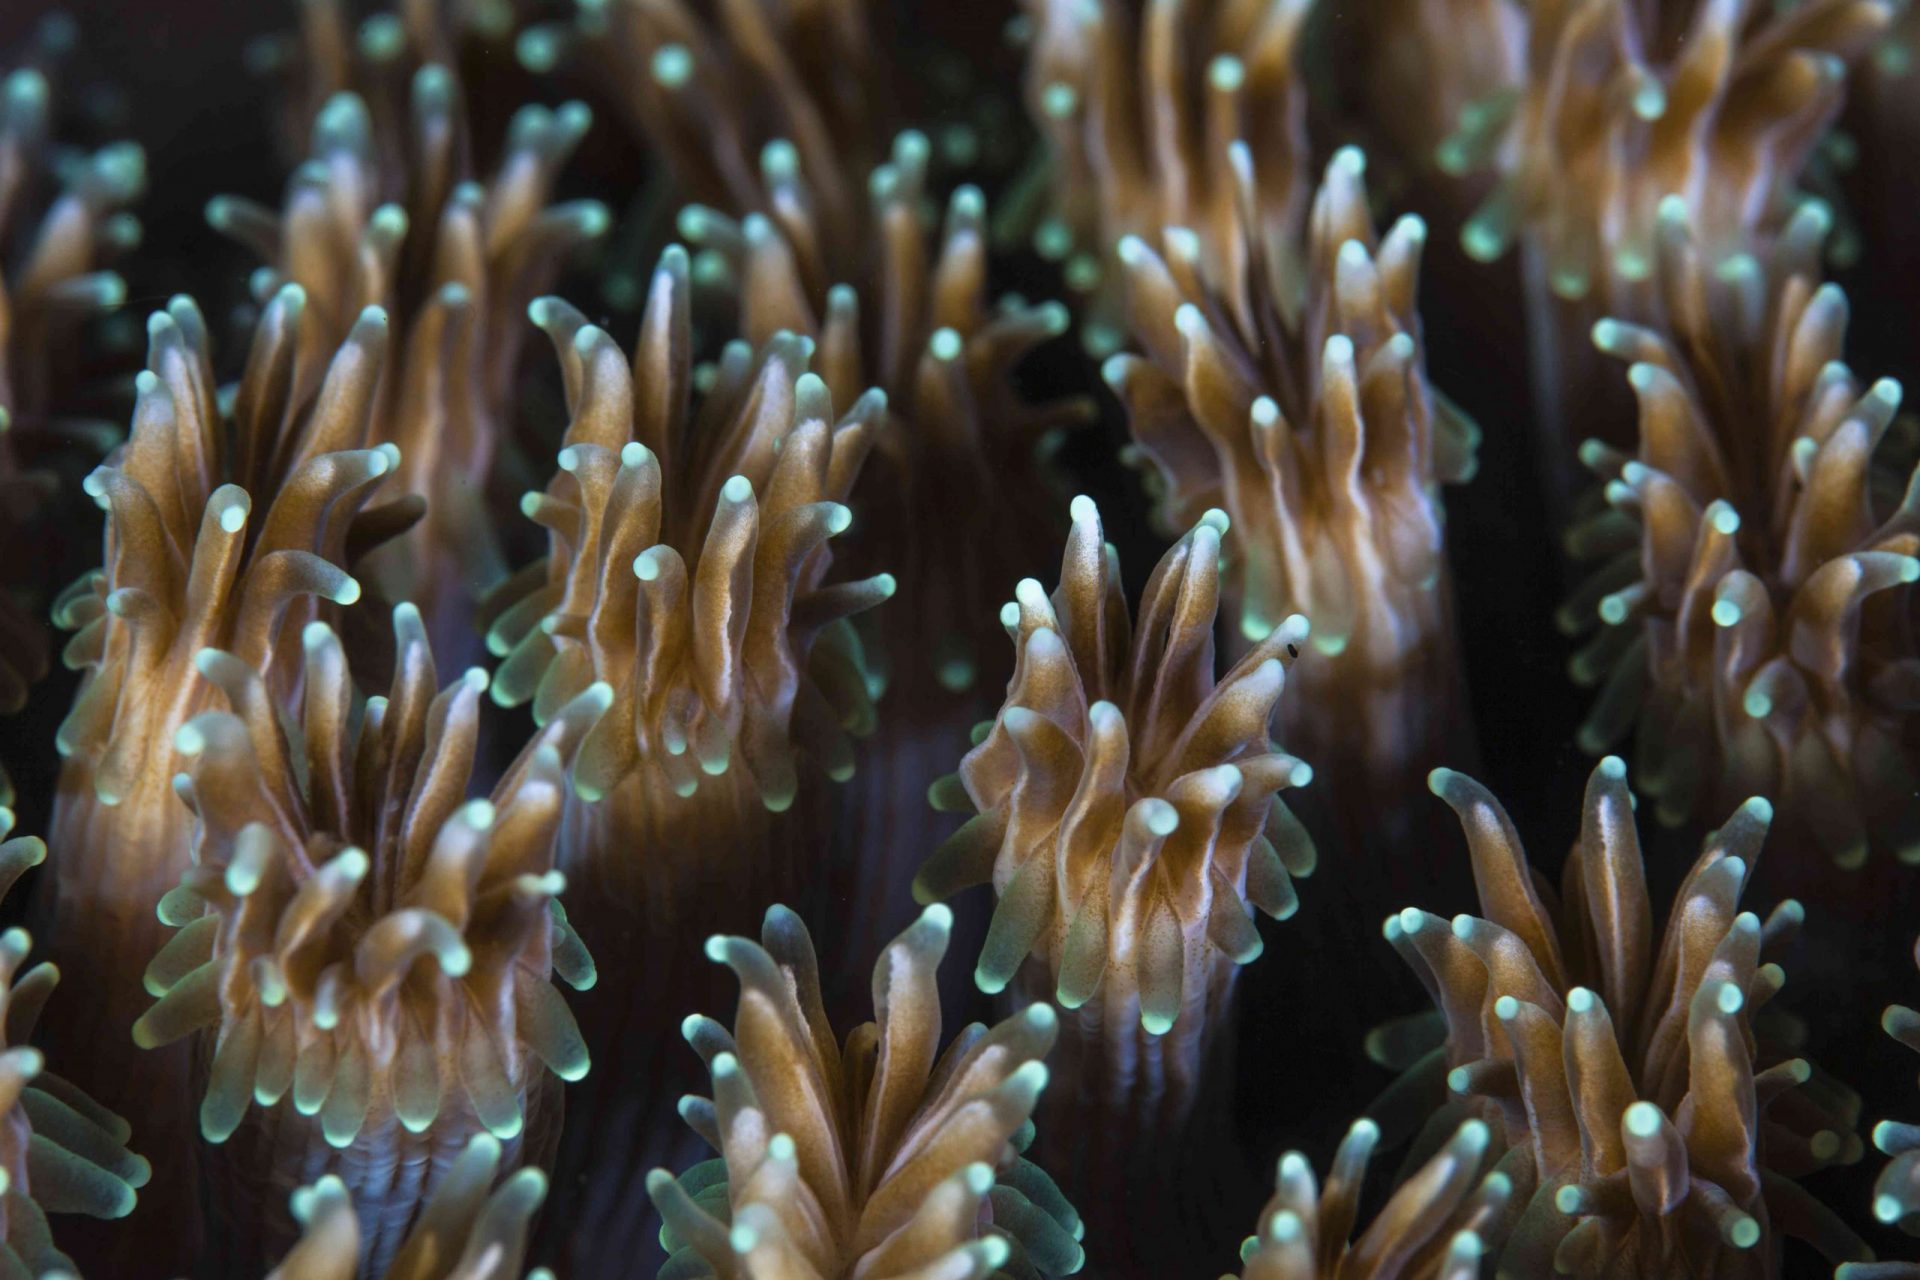 Los pólipos de una colonia de coral Galaxea crecen en un arrecife de Indonesia